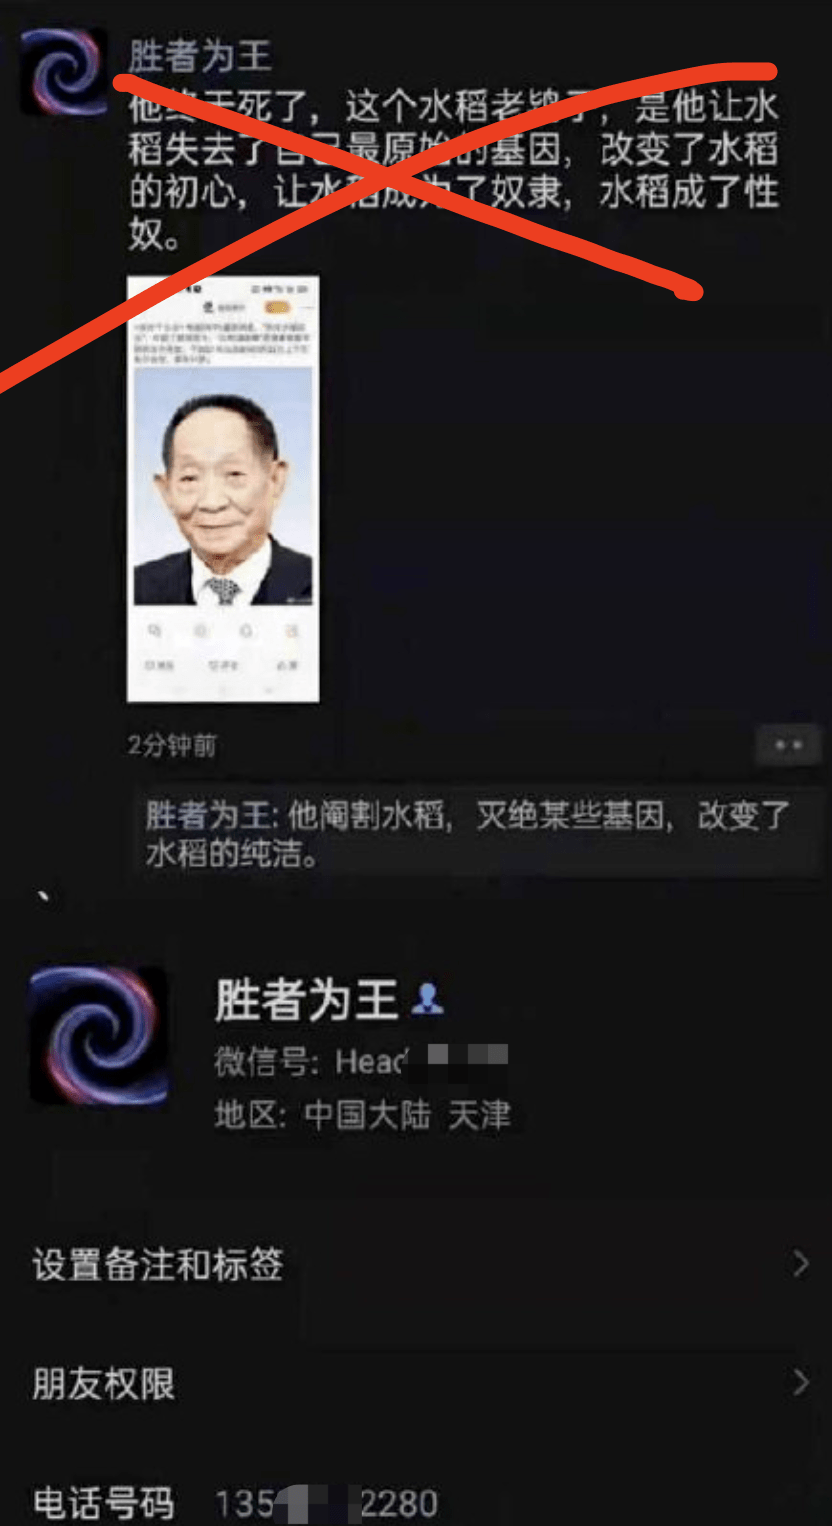 发表针对袁隆平院士的侮辱性言论网民胜者为王在微信朋友圈天津警方